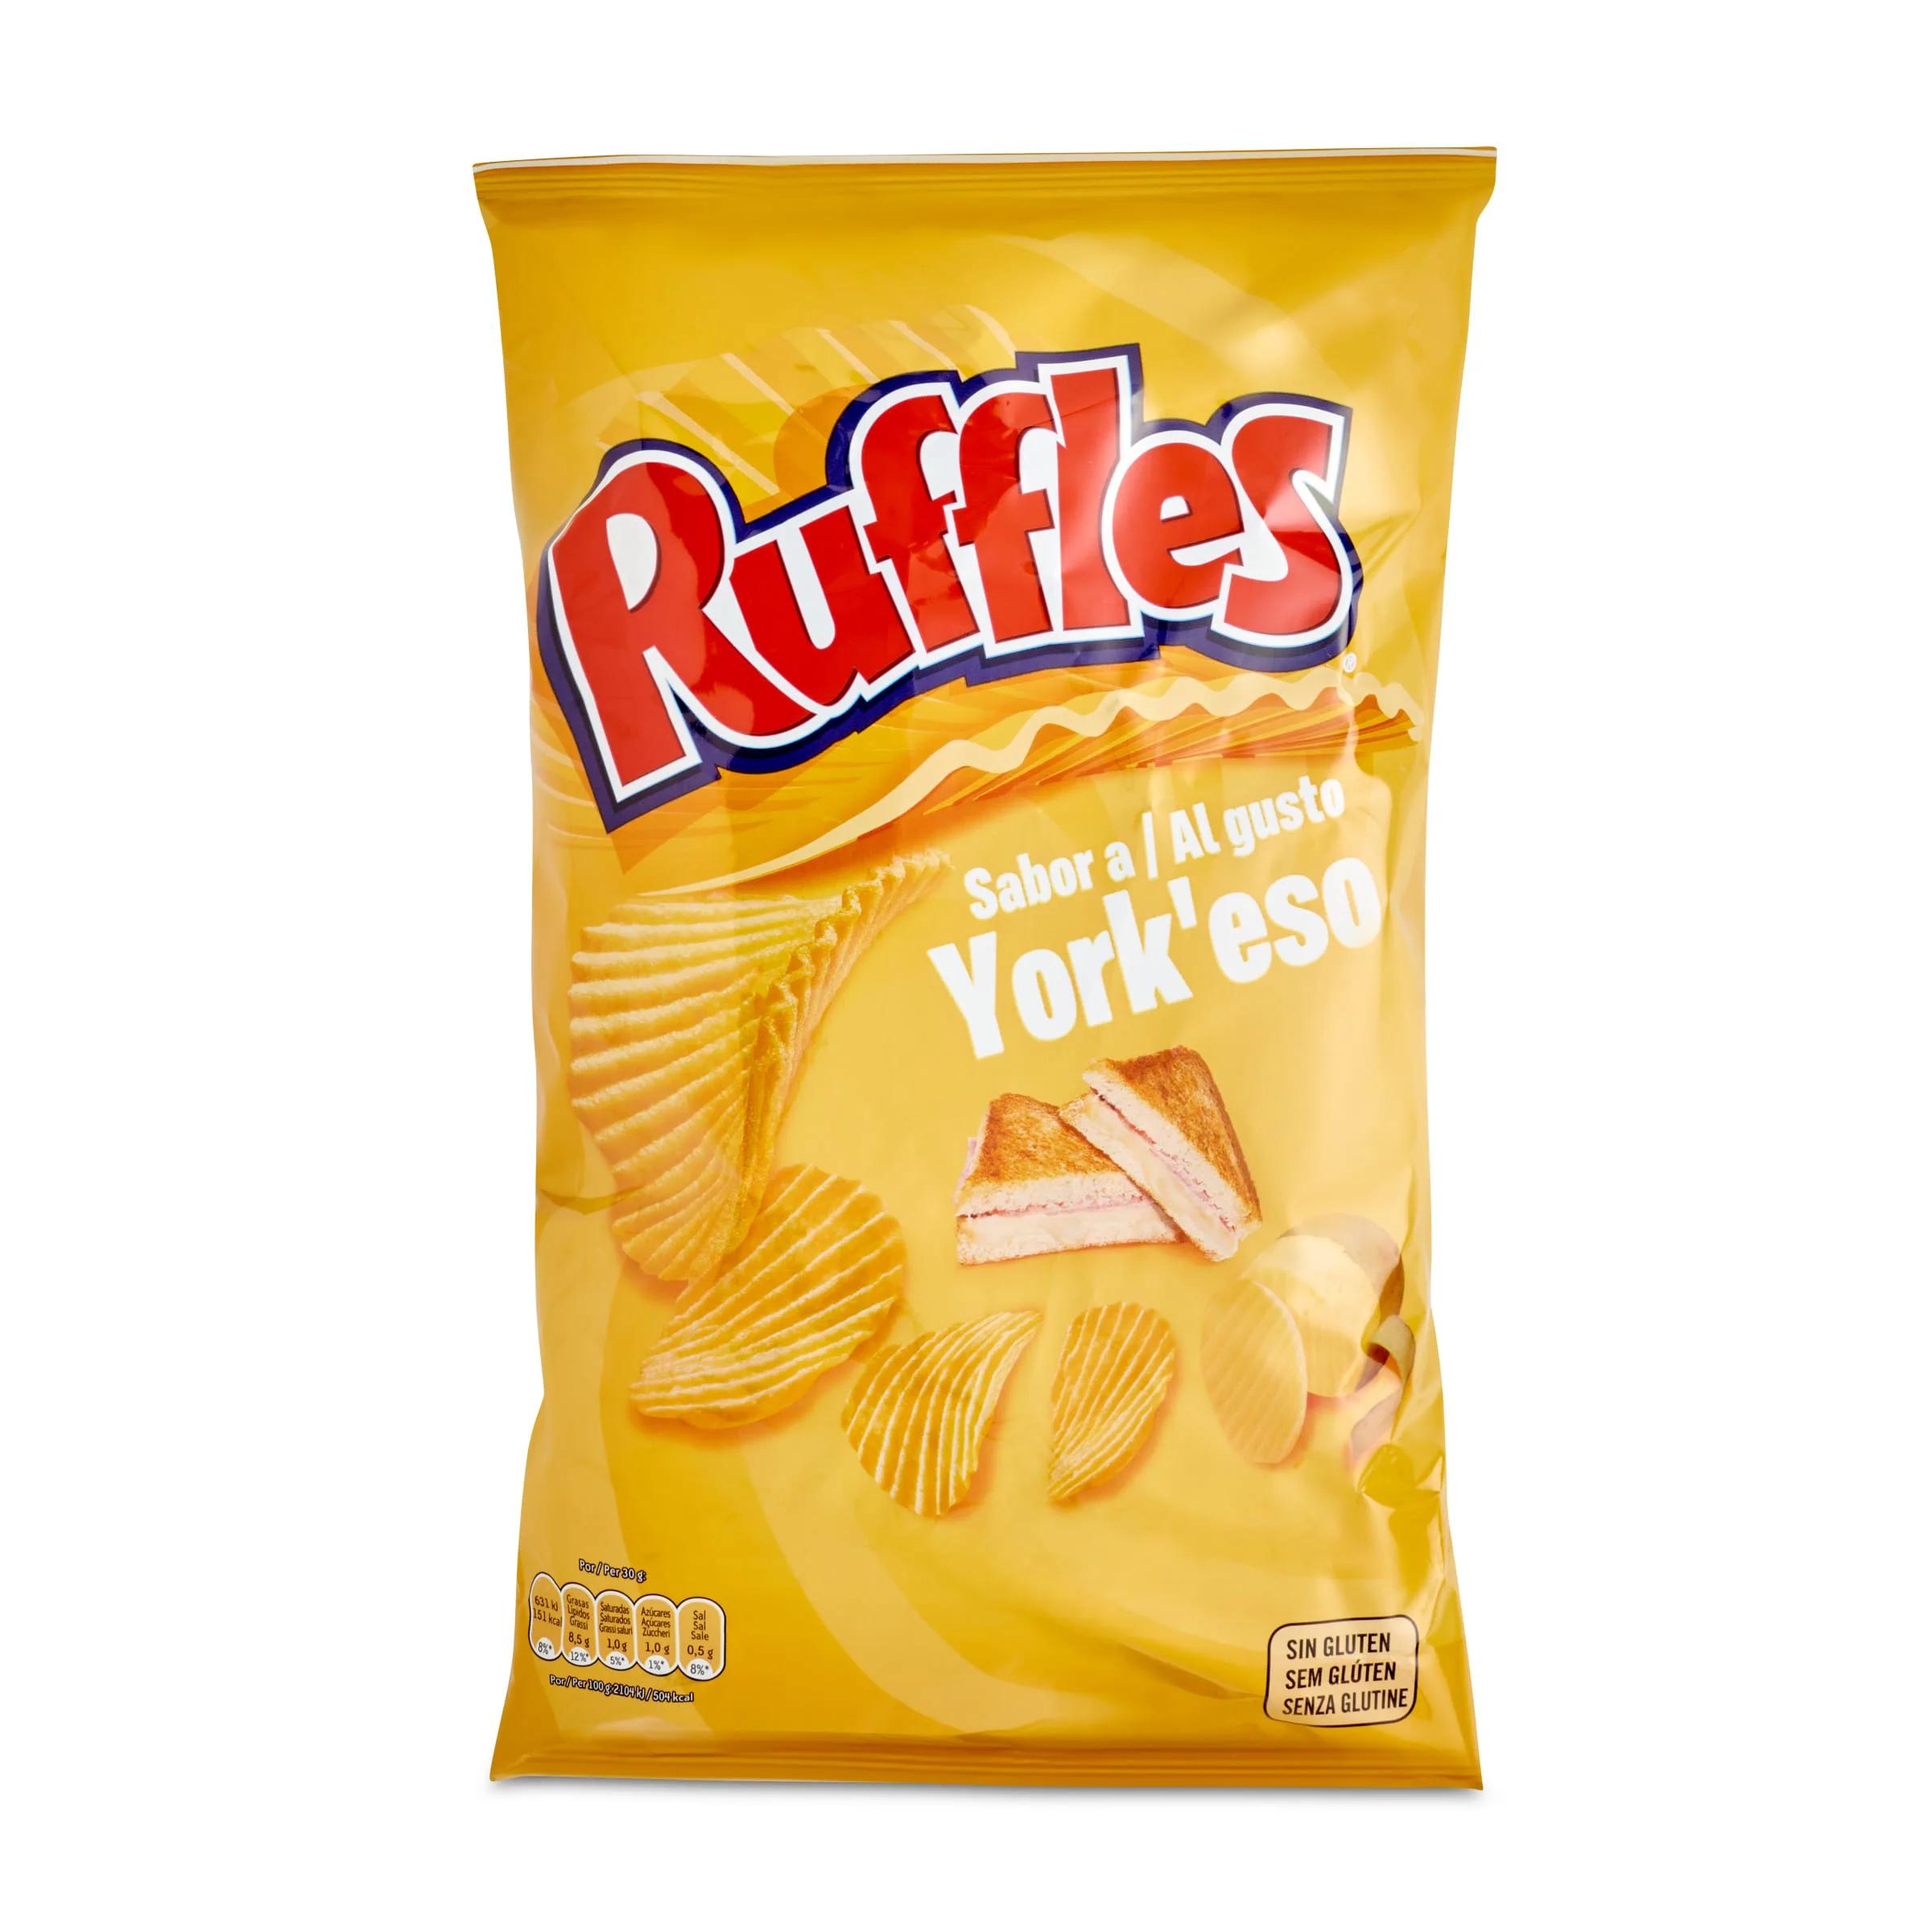 patatas ruffles york queso - Cuántas calorías tiene una bolsa de patatas Ruffles